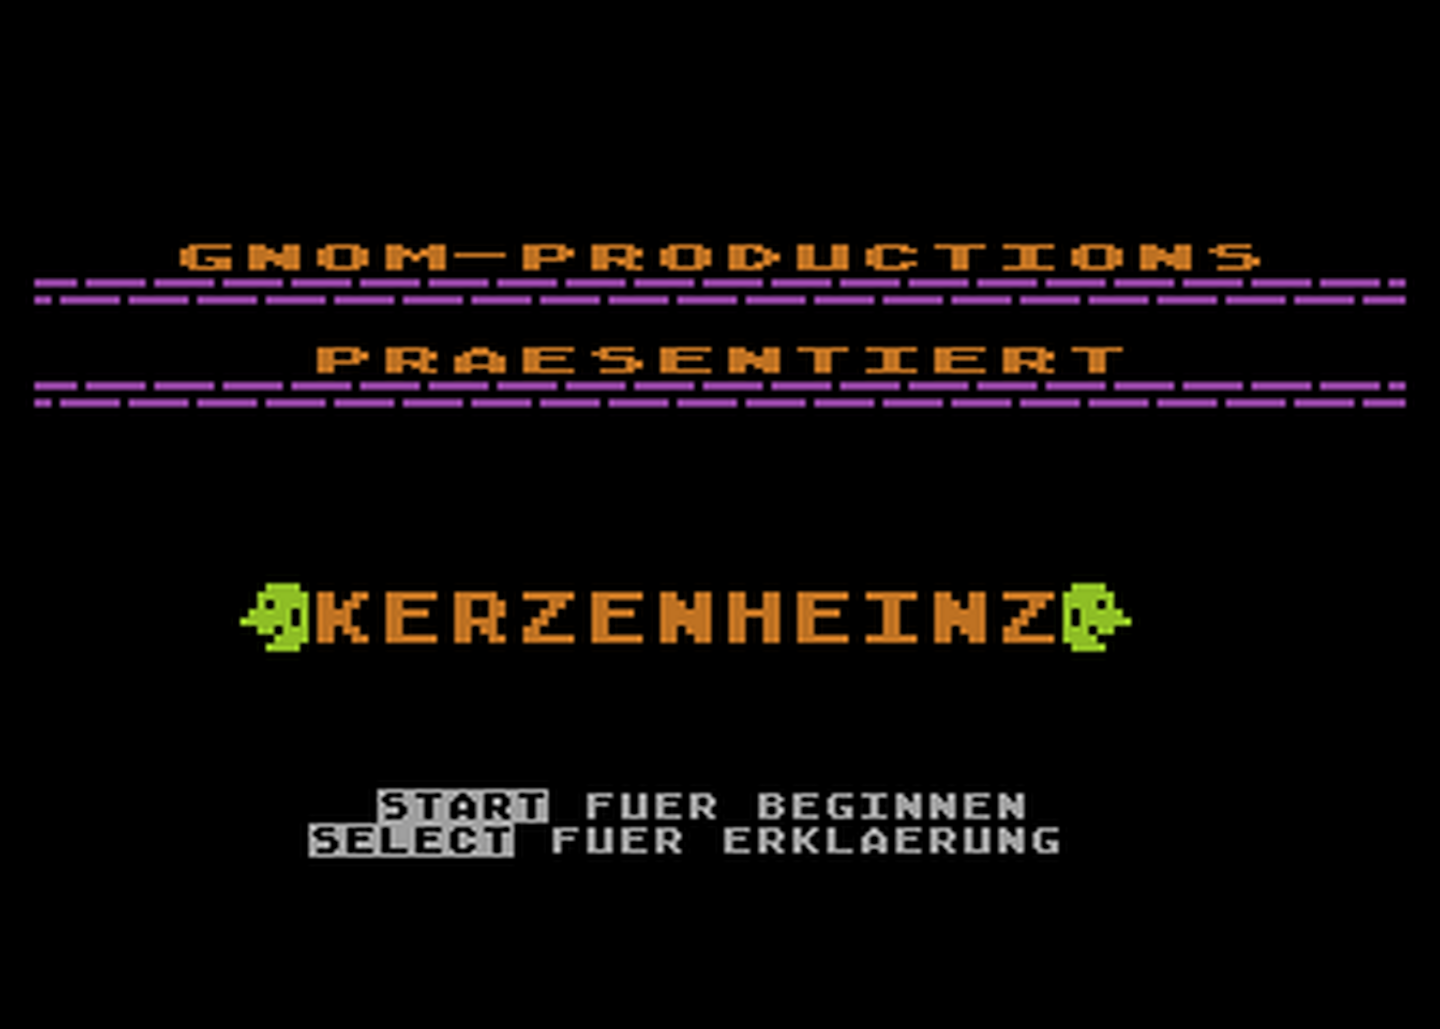 Atari GameBase Kerzenheinz Computronic 1985